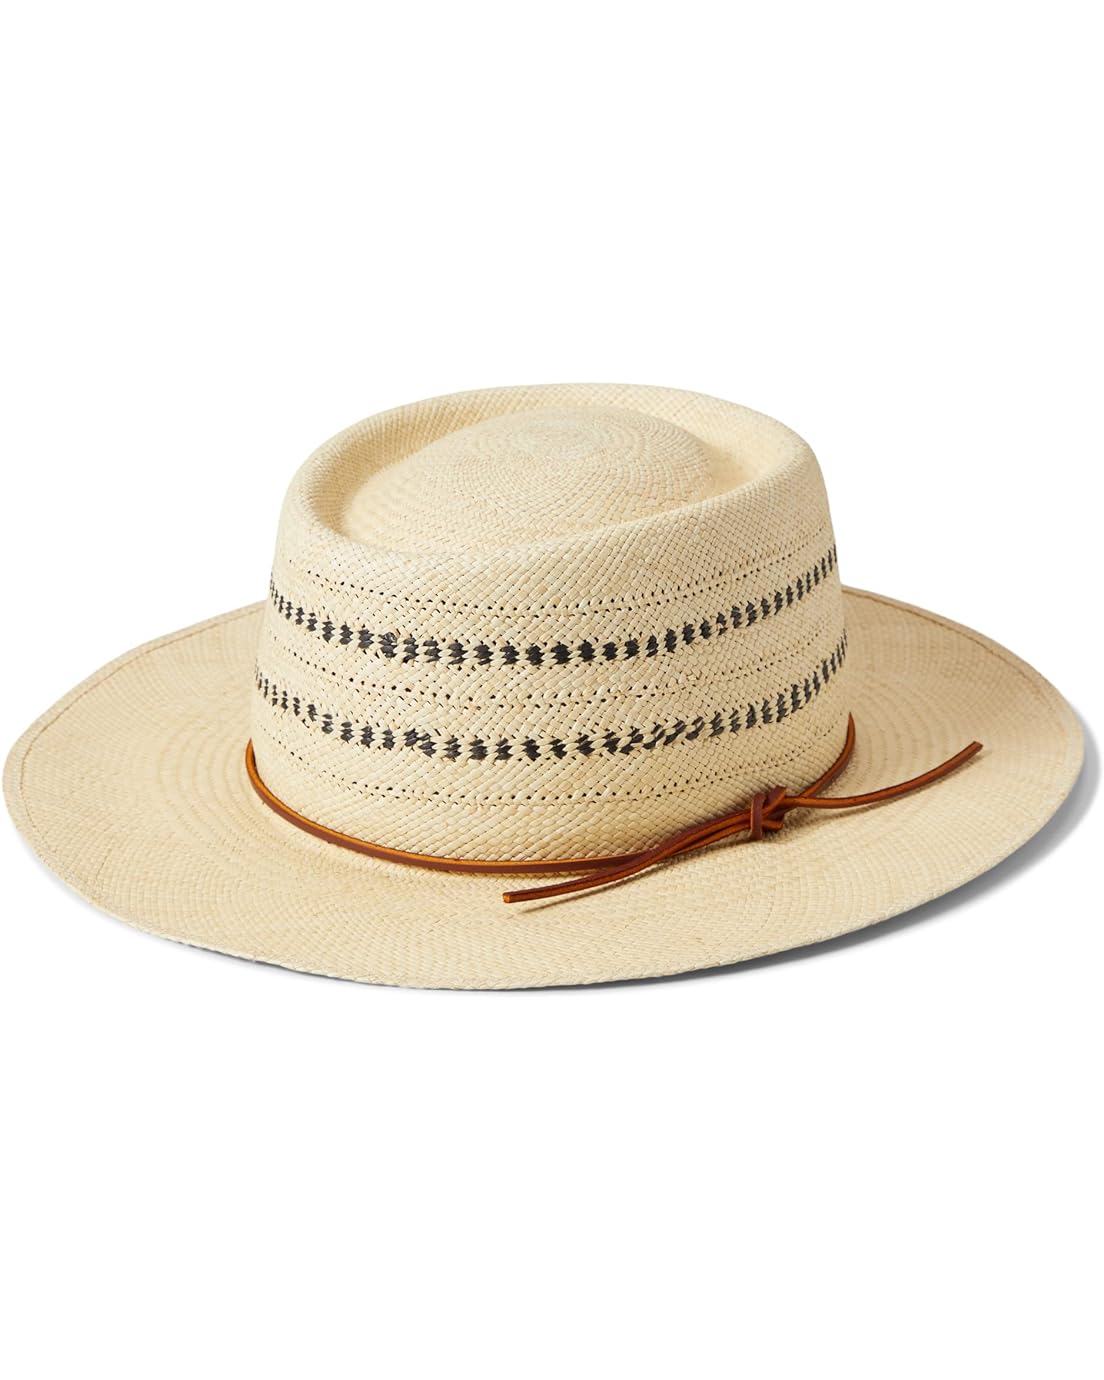 rag & bone Cora Panama Hat